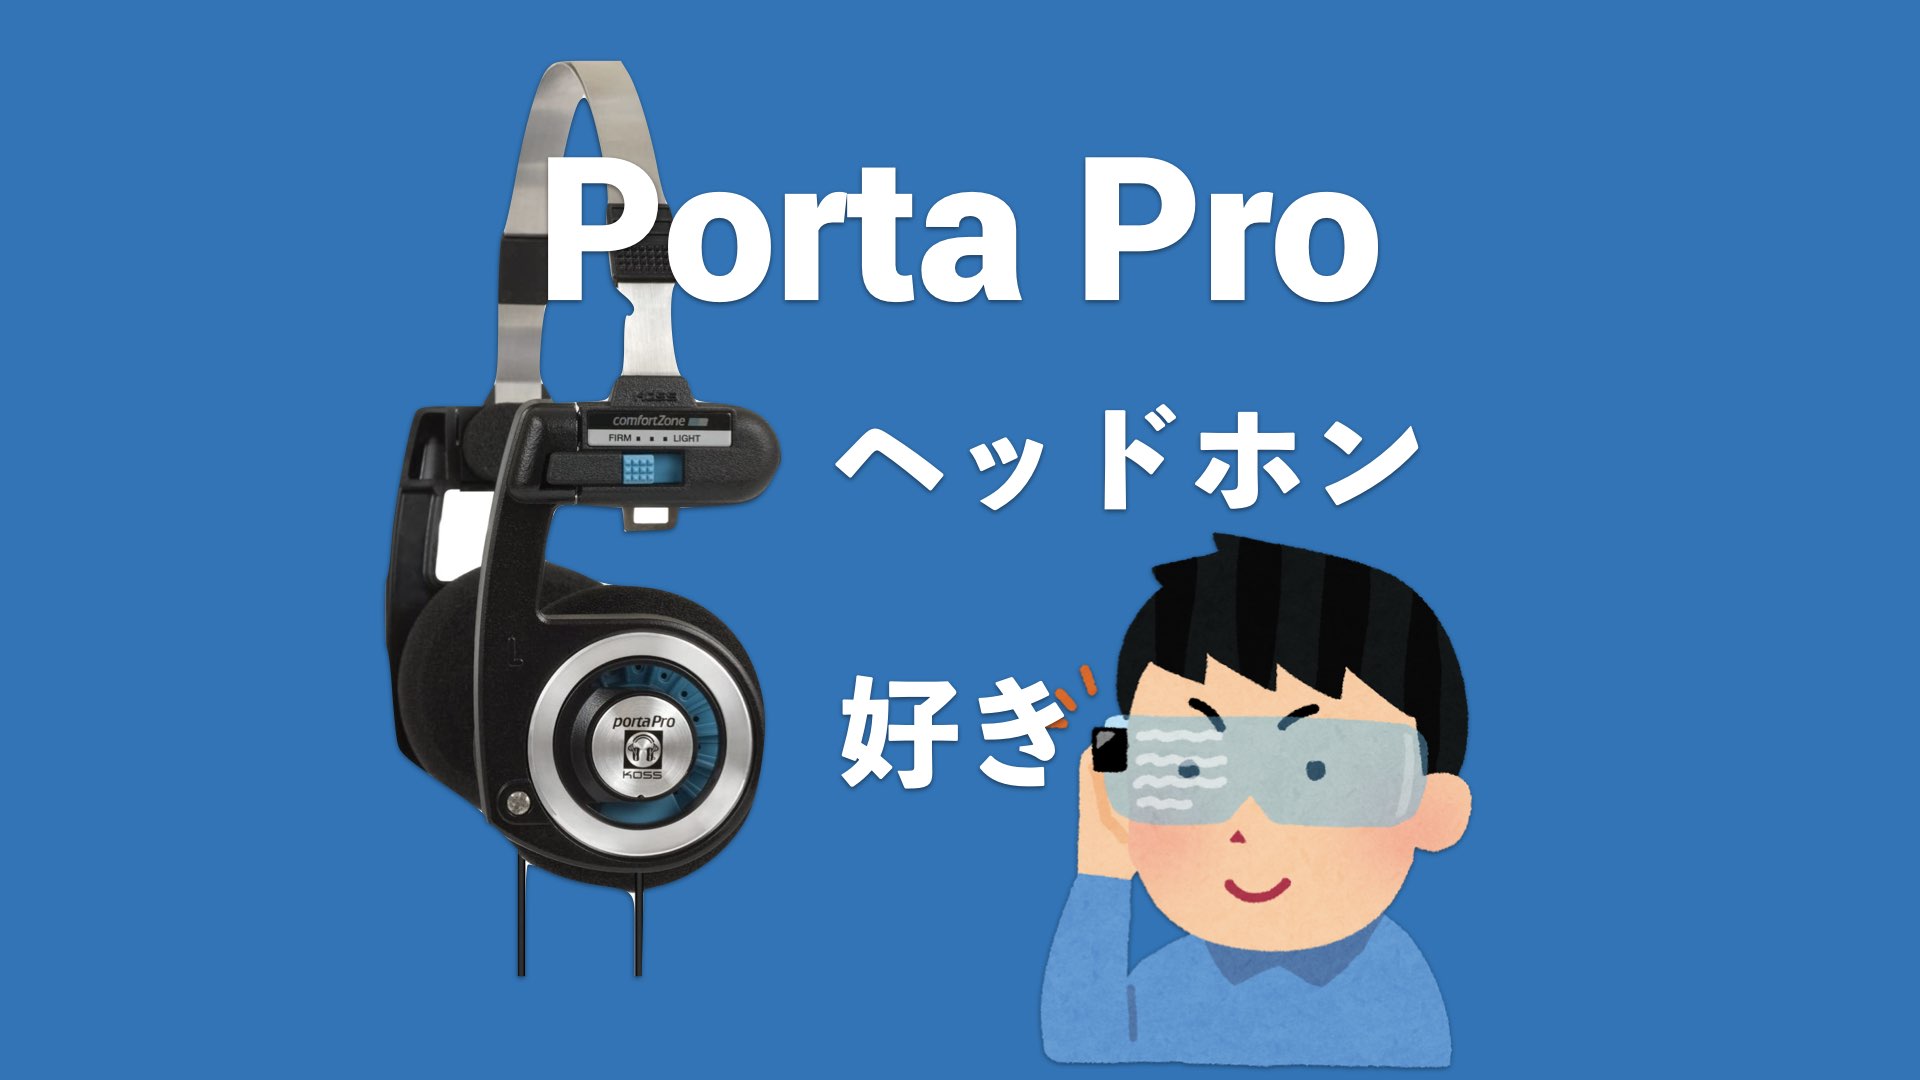 こういうので良いんだよ】Porta Pro 低音全振り音ダダ漏れ系レトロフューチャーヘッドホン (KOSS) | Selohan.com